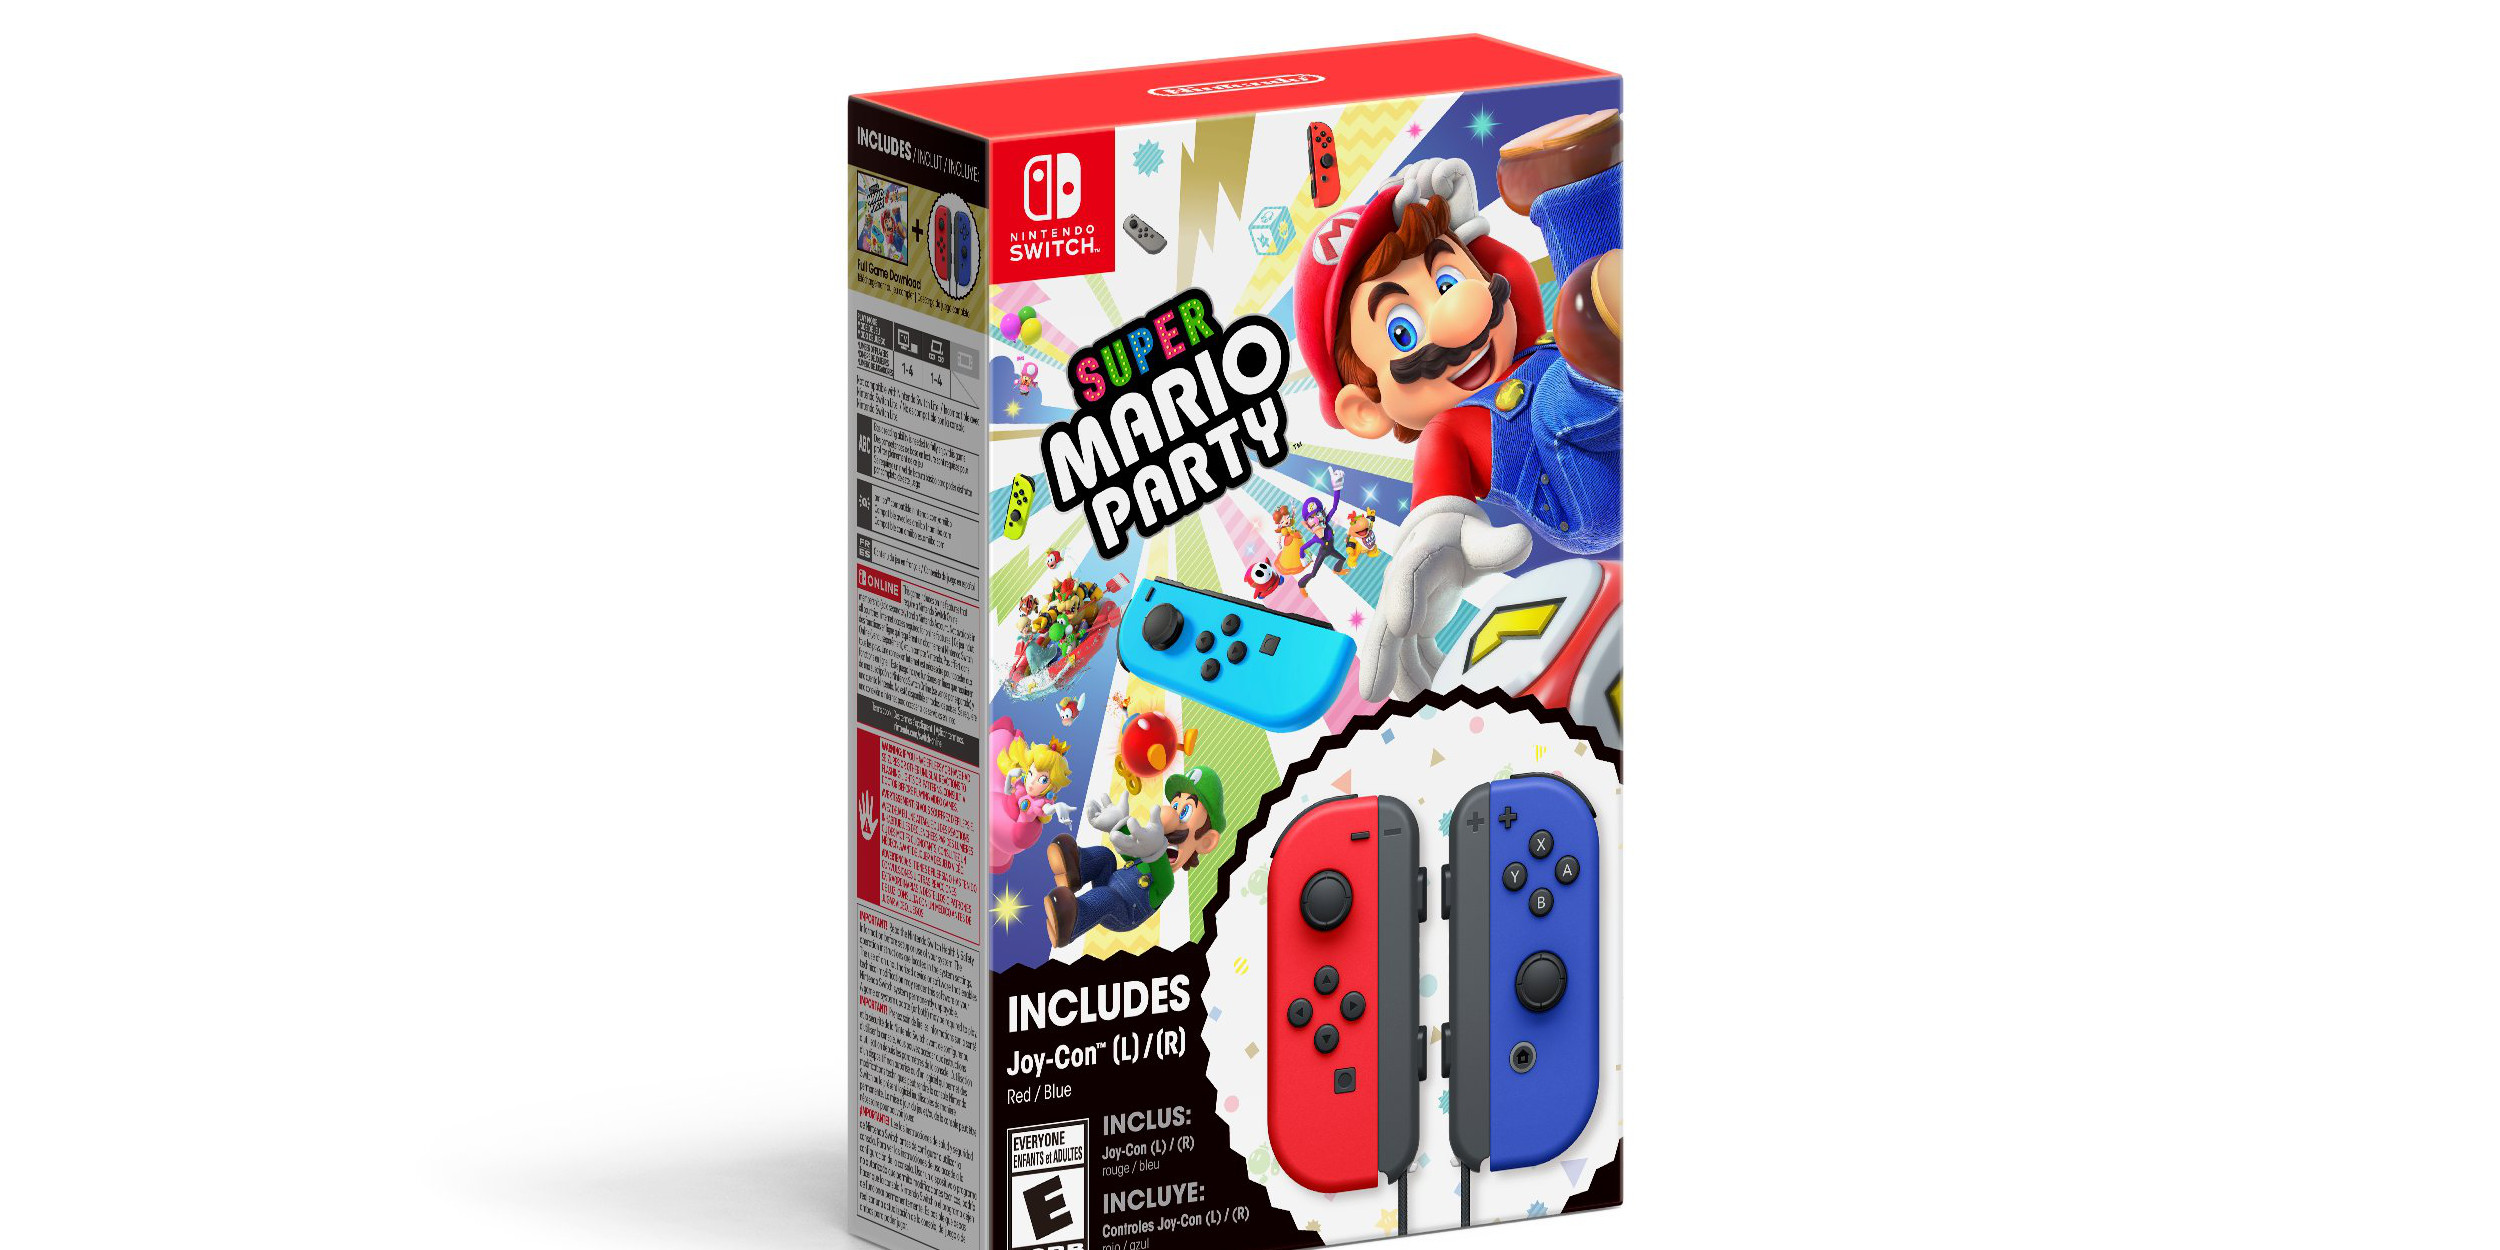 Nintendo unveils new Super Mario Party Joy-Con holiday bundle